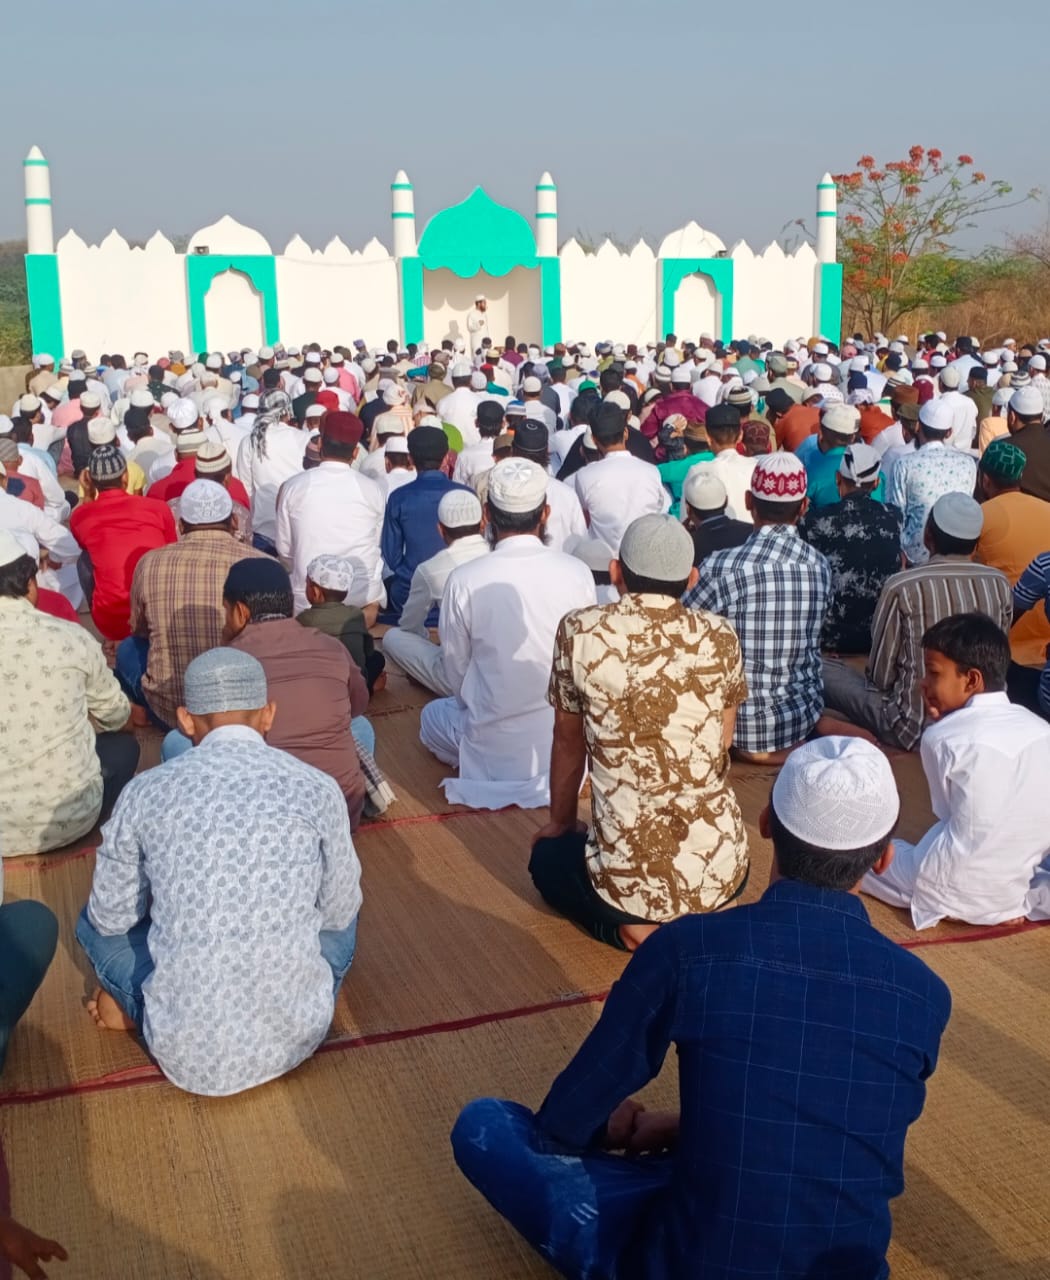 पूरे हर्षोल्लास के साथ मनाया गया ईद उल फितर का त्यौहार, देश में अमन व शांति के लिए मांगी गई दुआएं | New India Times